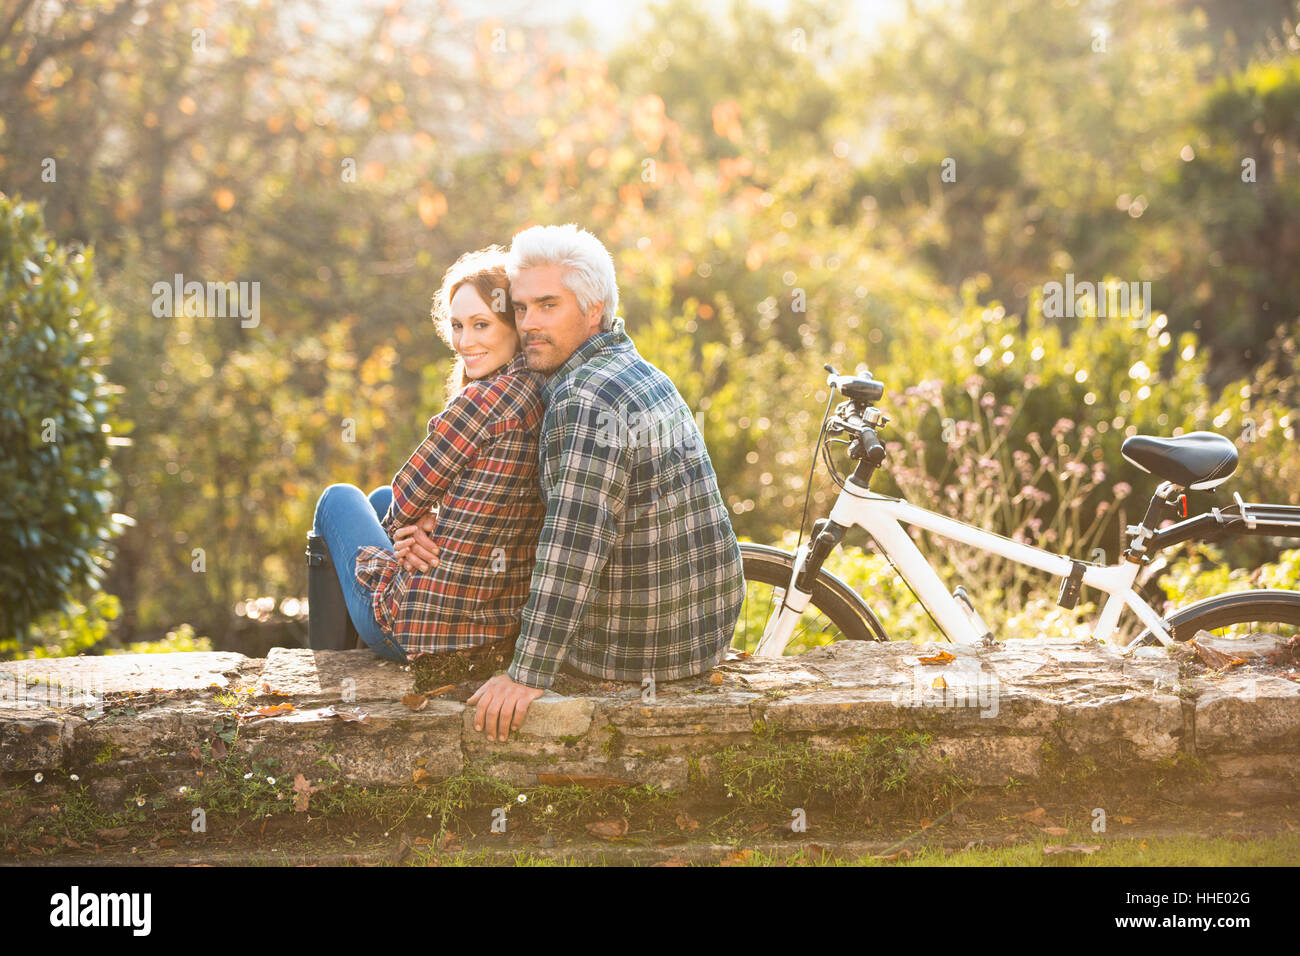 Affectueux Portrait couple avec location reposant sur mur de pierre dans la région de autumn park Banque D'Images